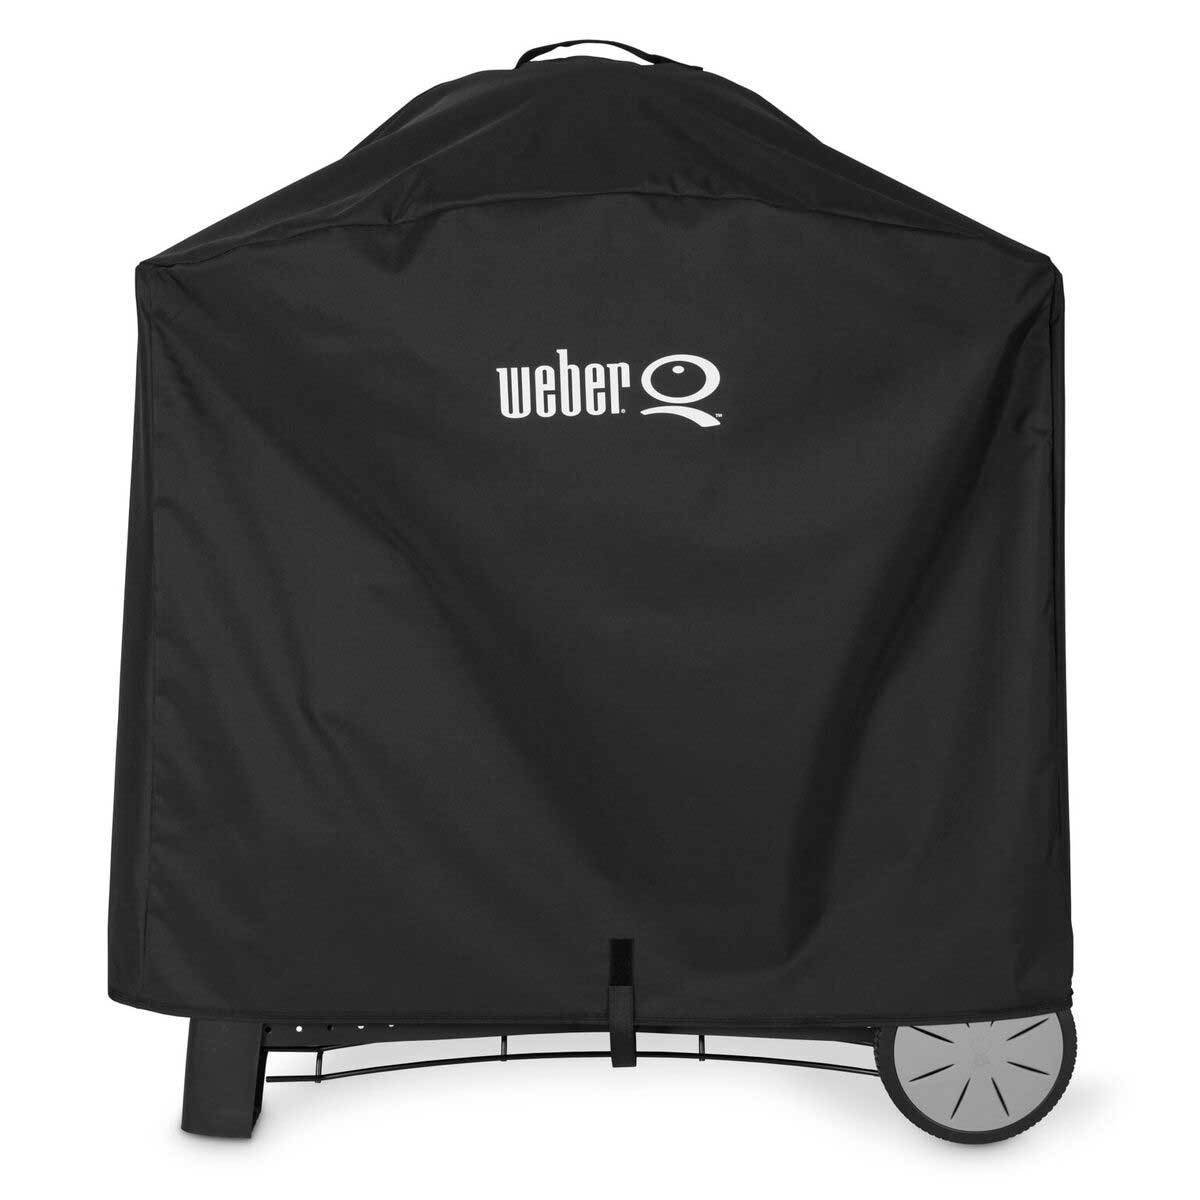 Weber Abdeckhaube für Q-Serie Grillgeräte, 100 % Polyester, schwarz